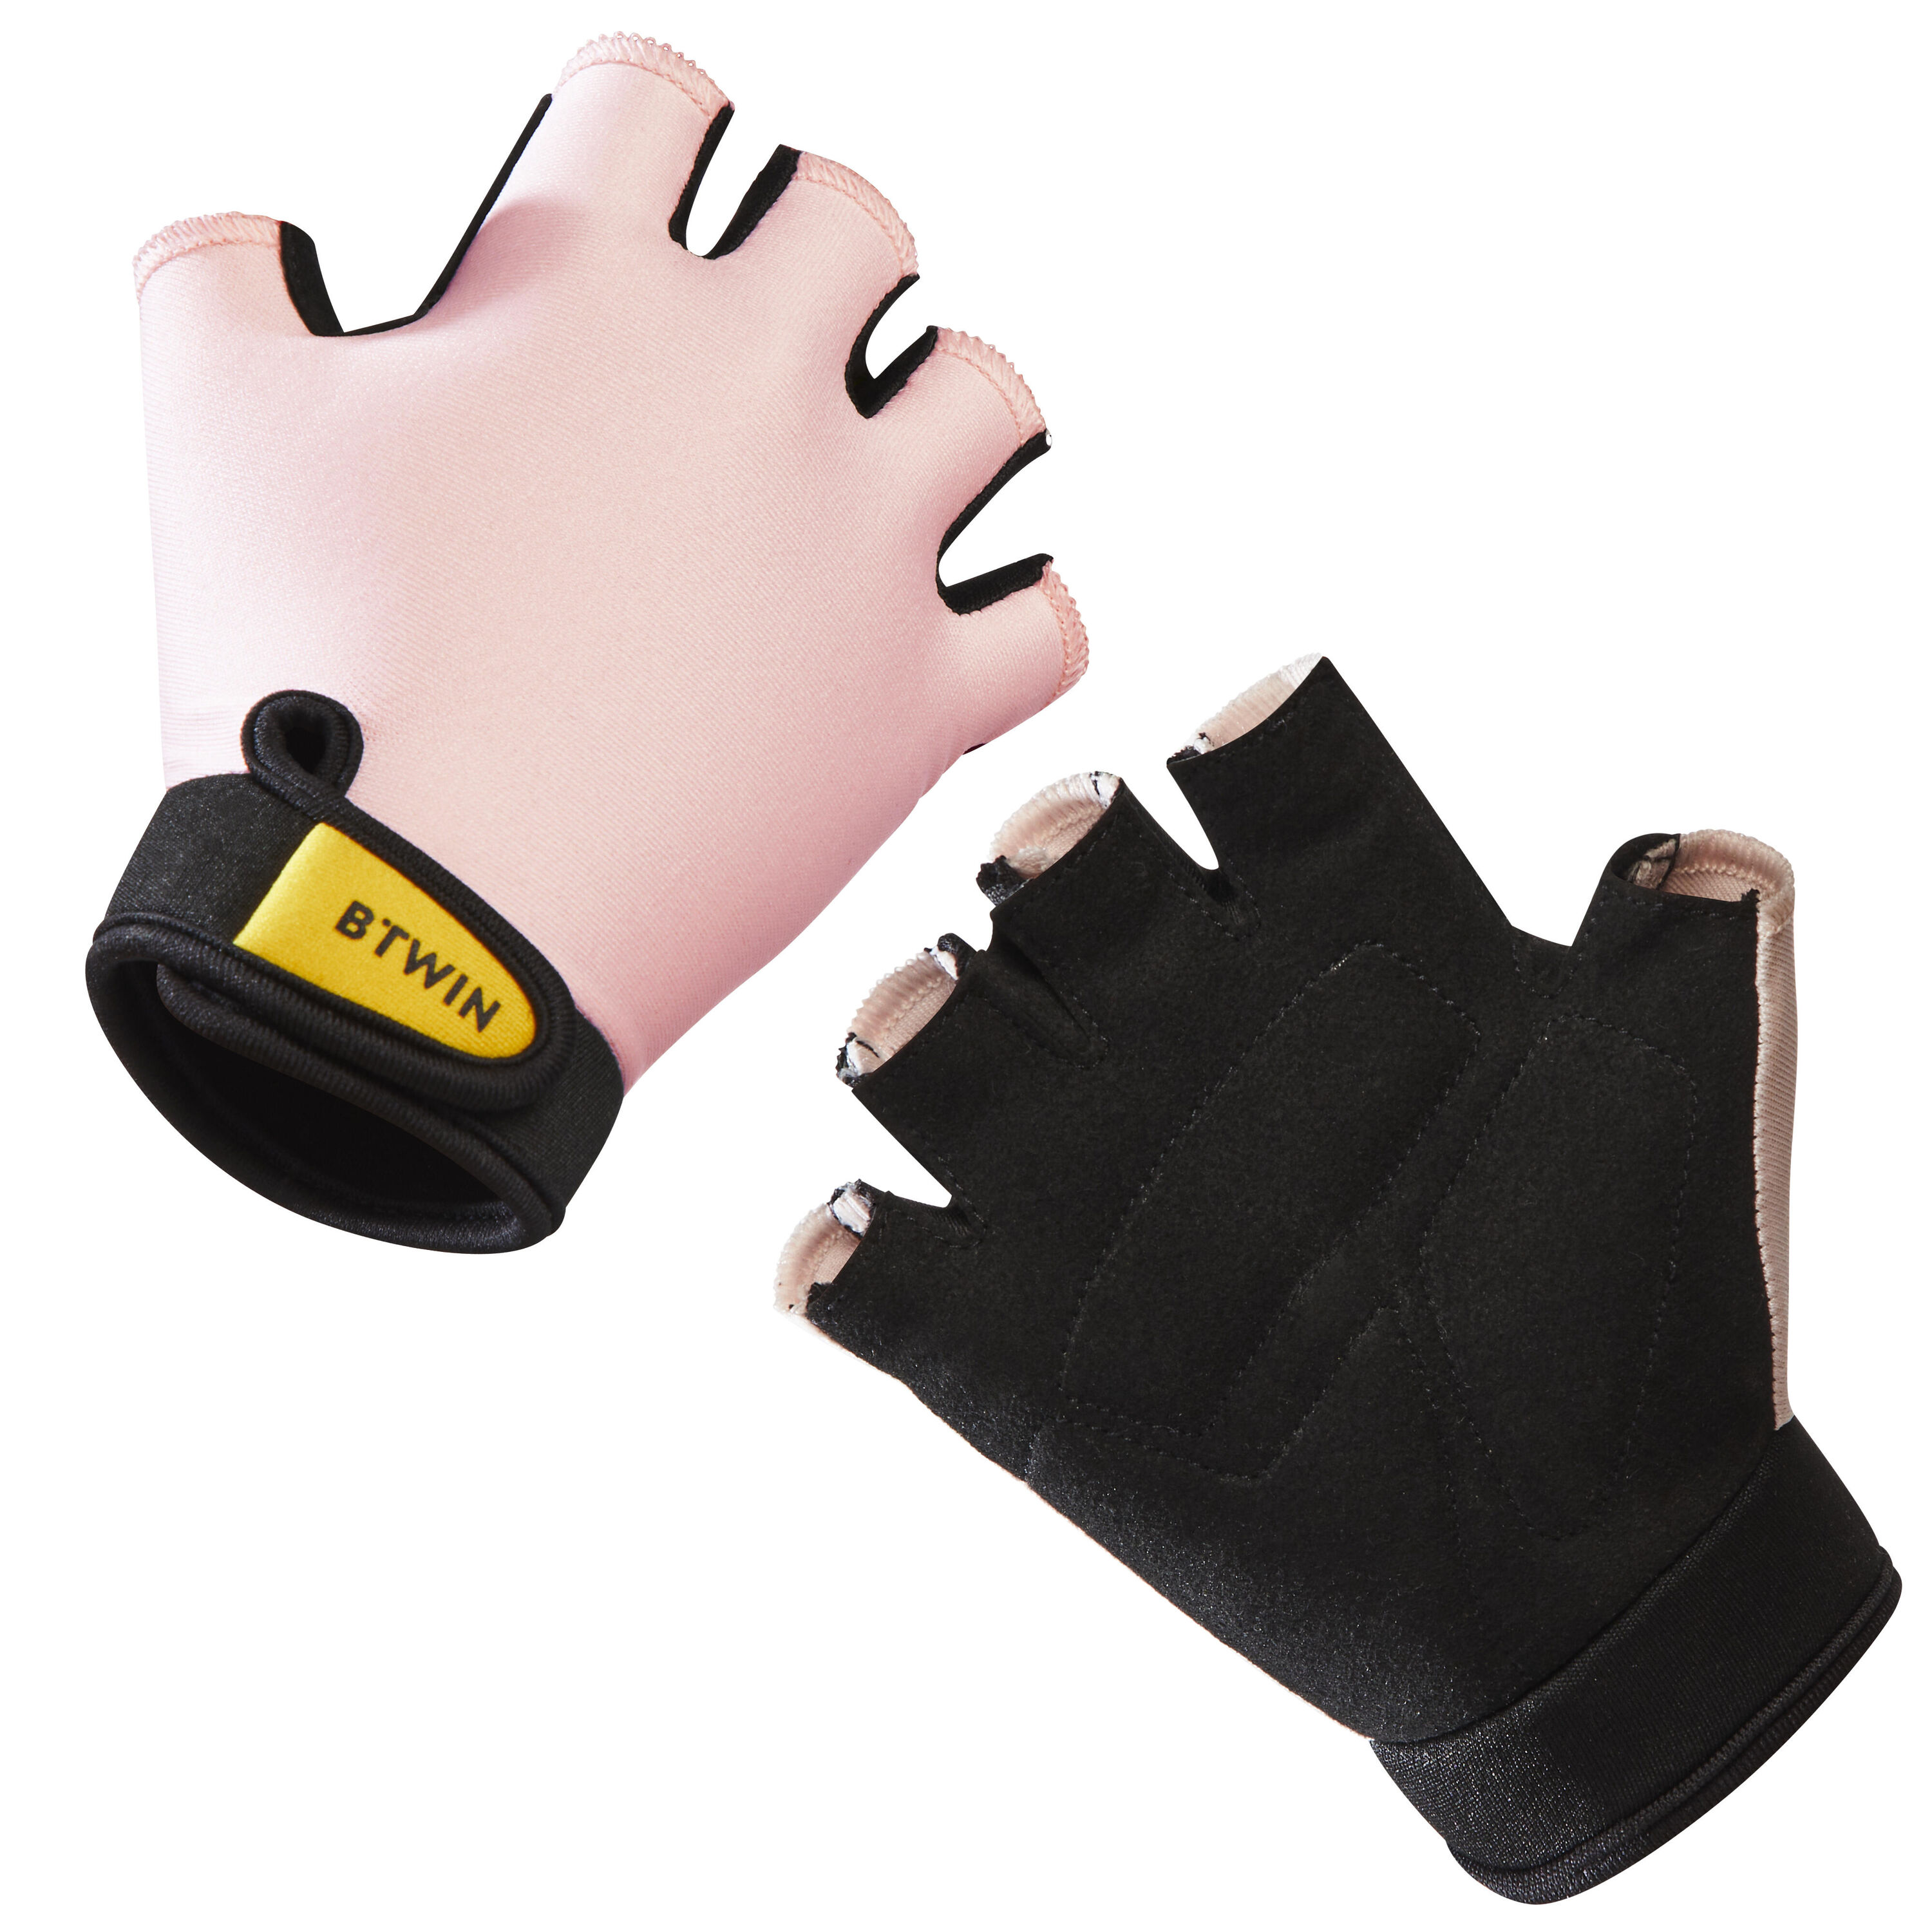 BTWIN Kids' Cycling Fingerless Gloves - Pink